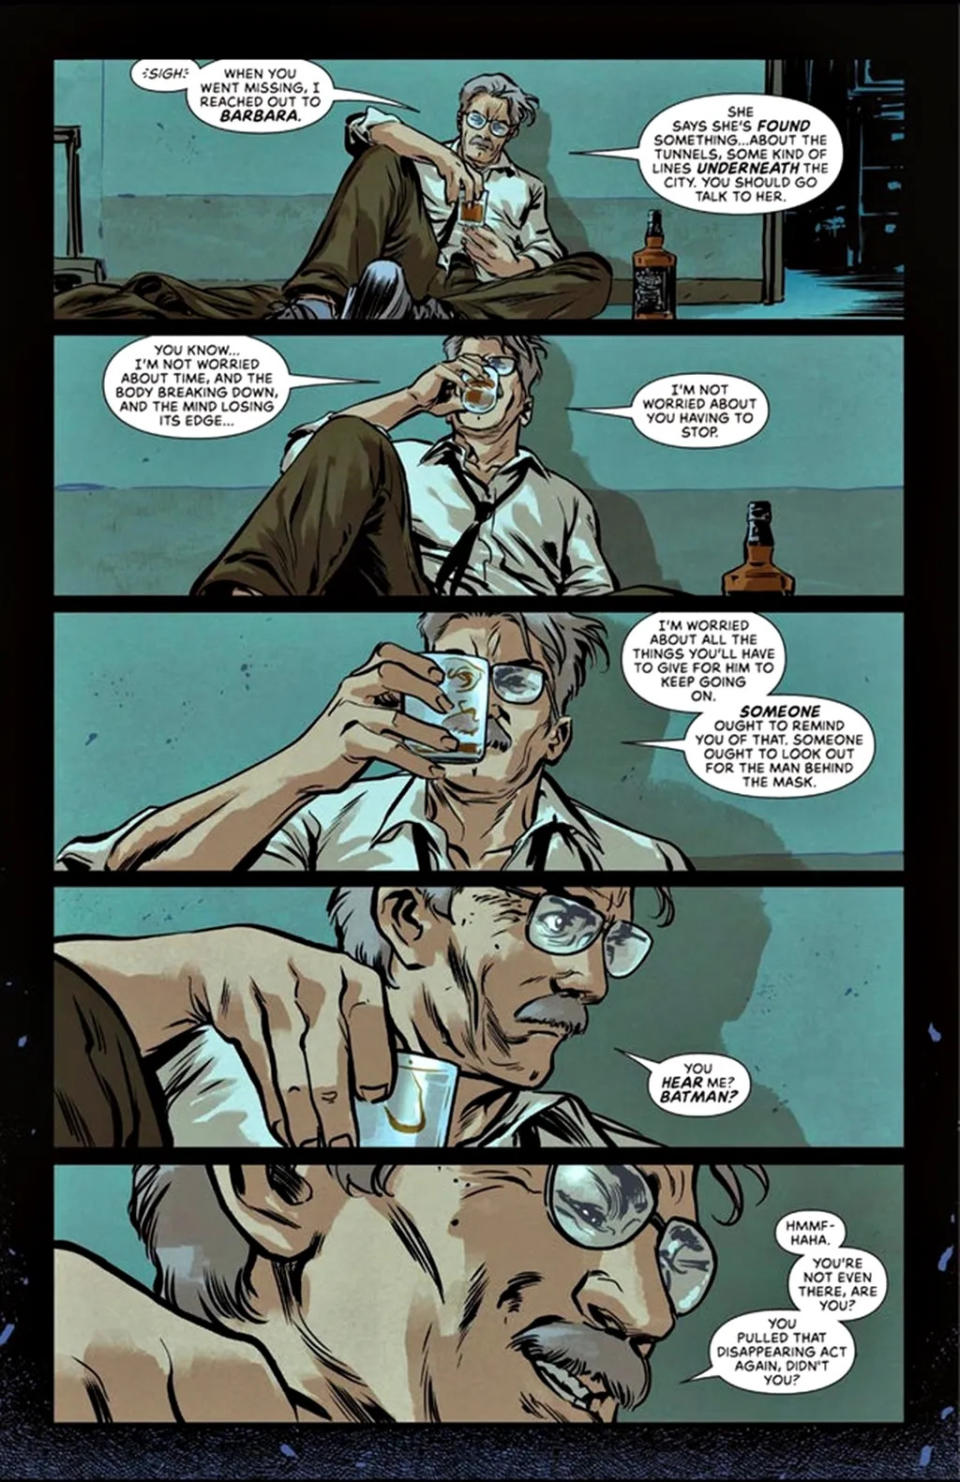 Gordon flagra o momento em que Batman tenta, mas não consegue, "desaparecer" (Imagem: Reprodução/DC Comics)